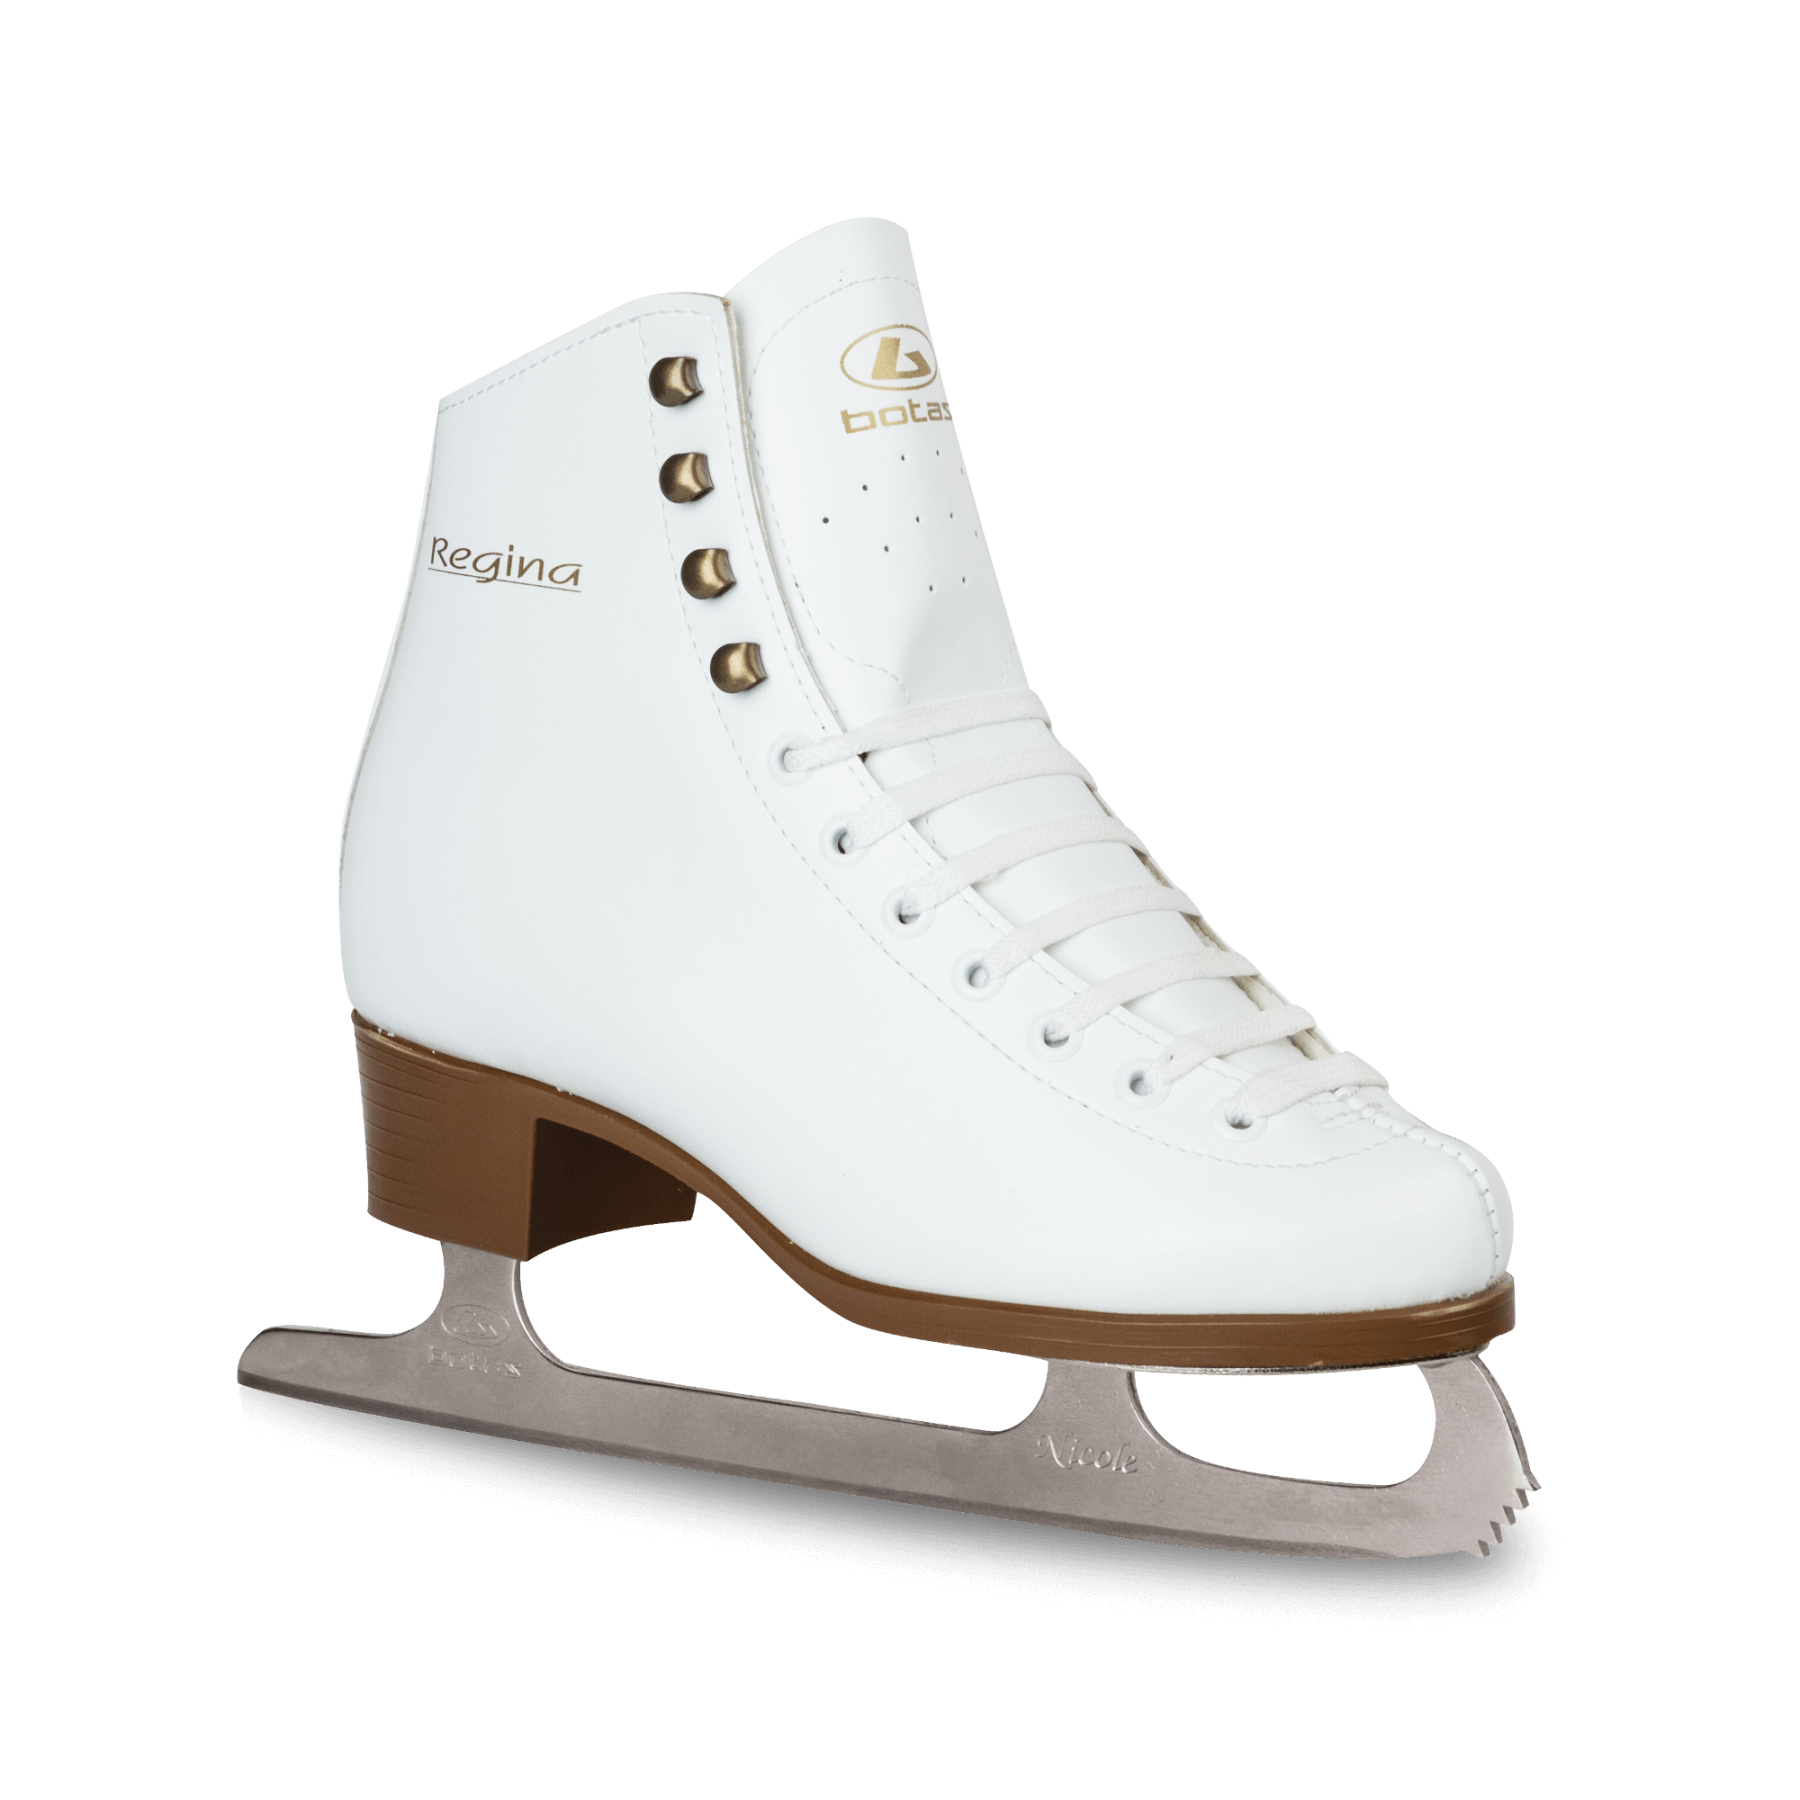 Chaussures de patinage de glace blanche PNG Image